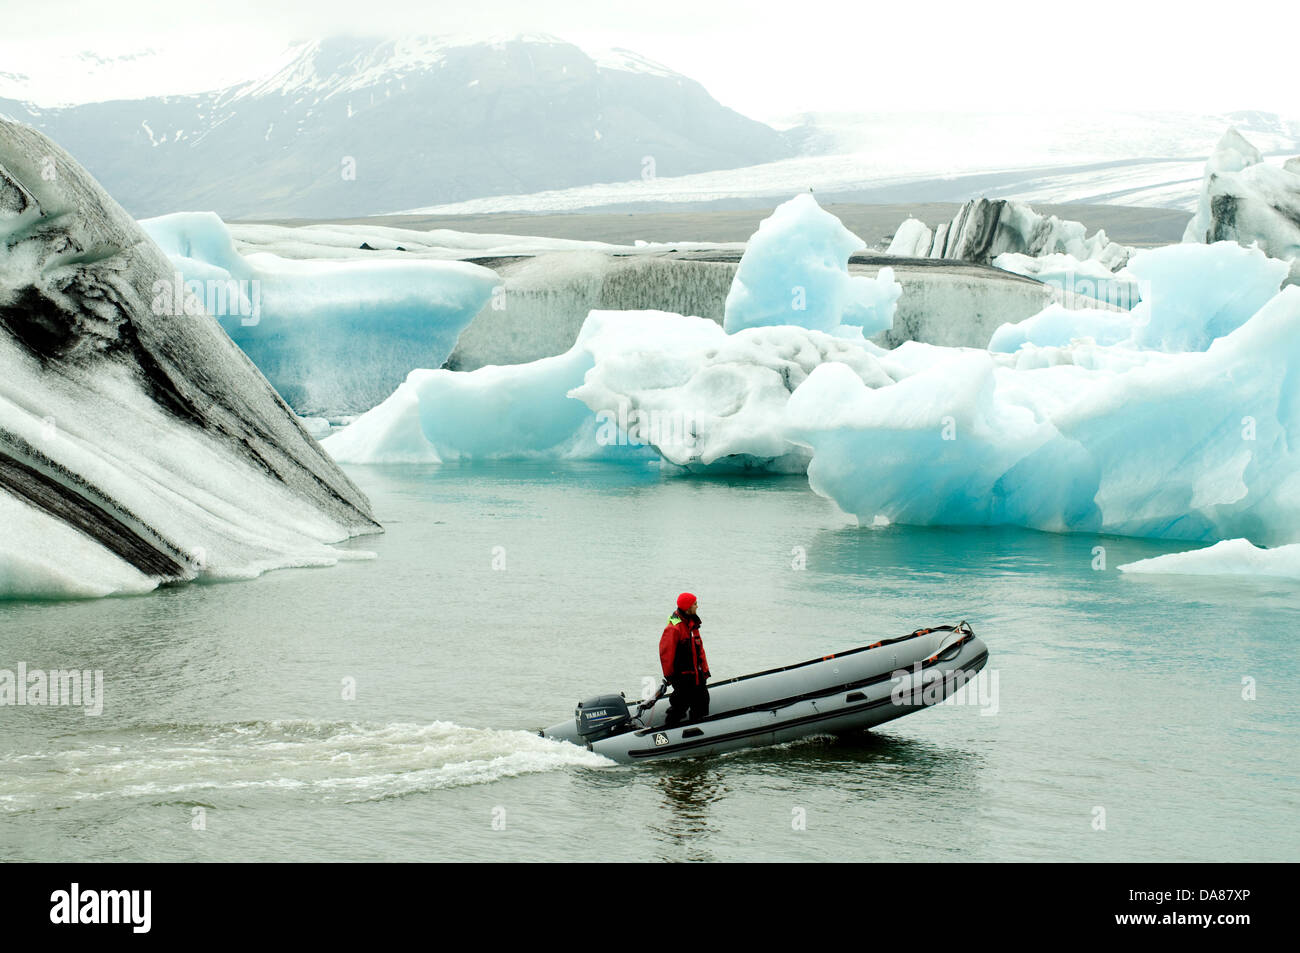 En Islandia la laguna glaciar Jökulsárlón un bote velocidad a través de aguas abiertas, evitando la masa iceberg invisible debajo Foto de stock